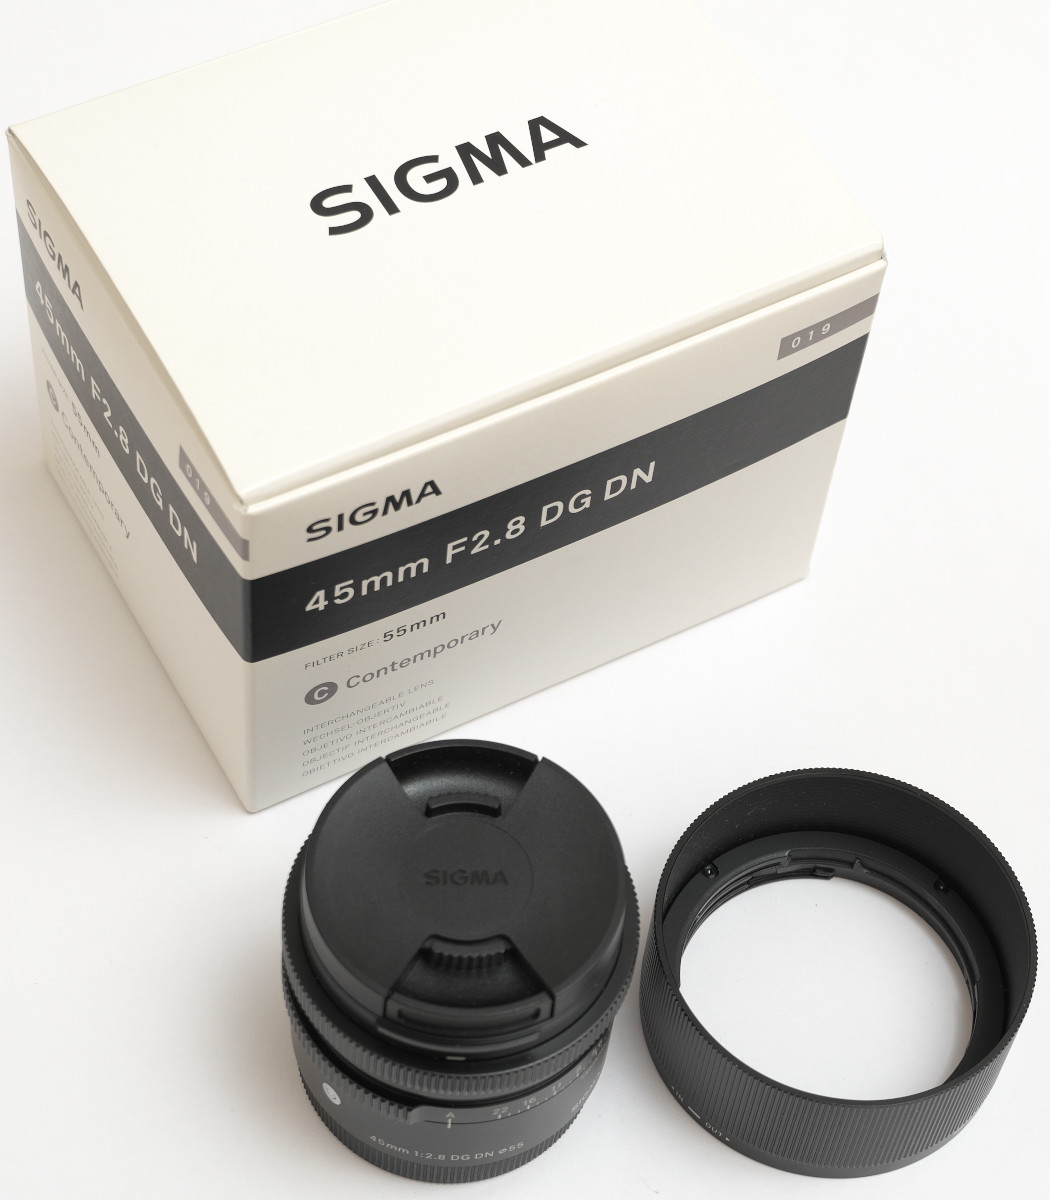 送料無料 SIGMA 45mm F2.8 DG DN 単焦点 軽量コンパクト オマケ付 使用